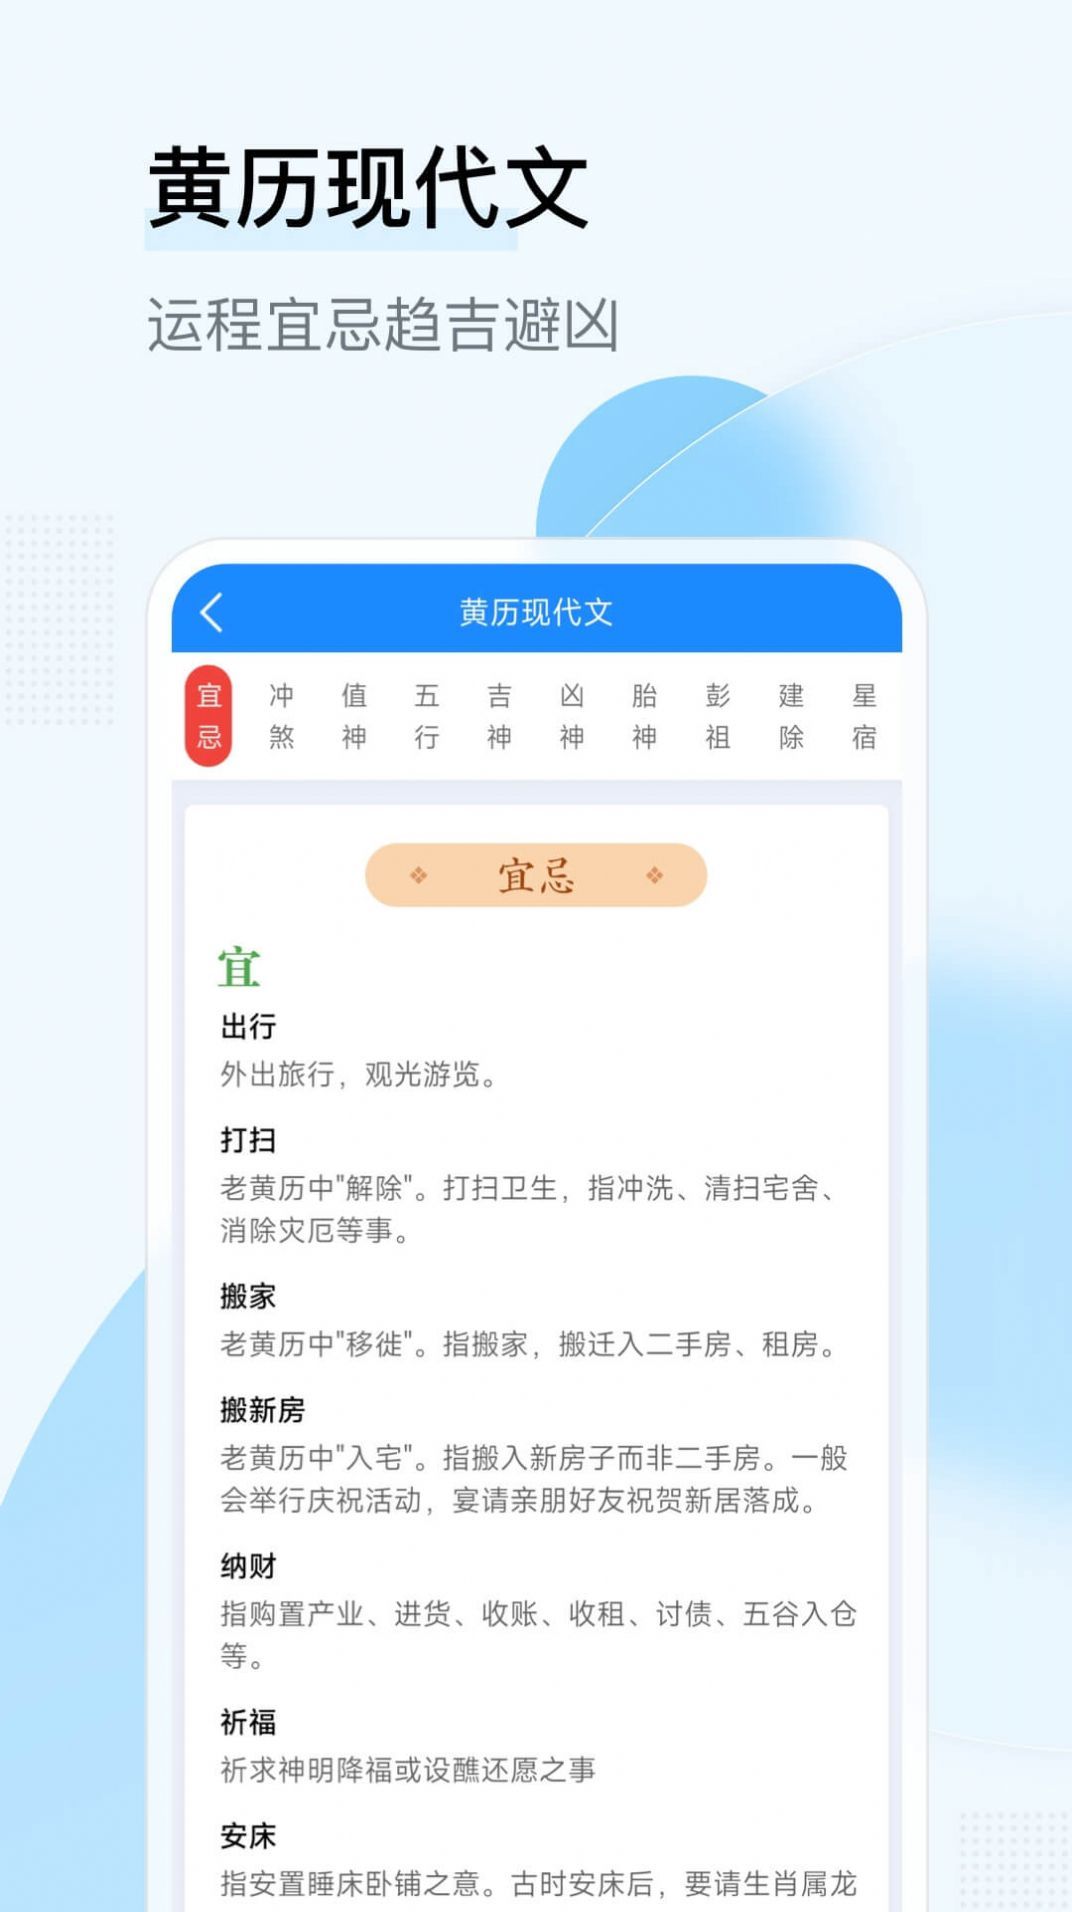 华安日历app图2